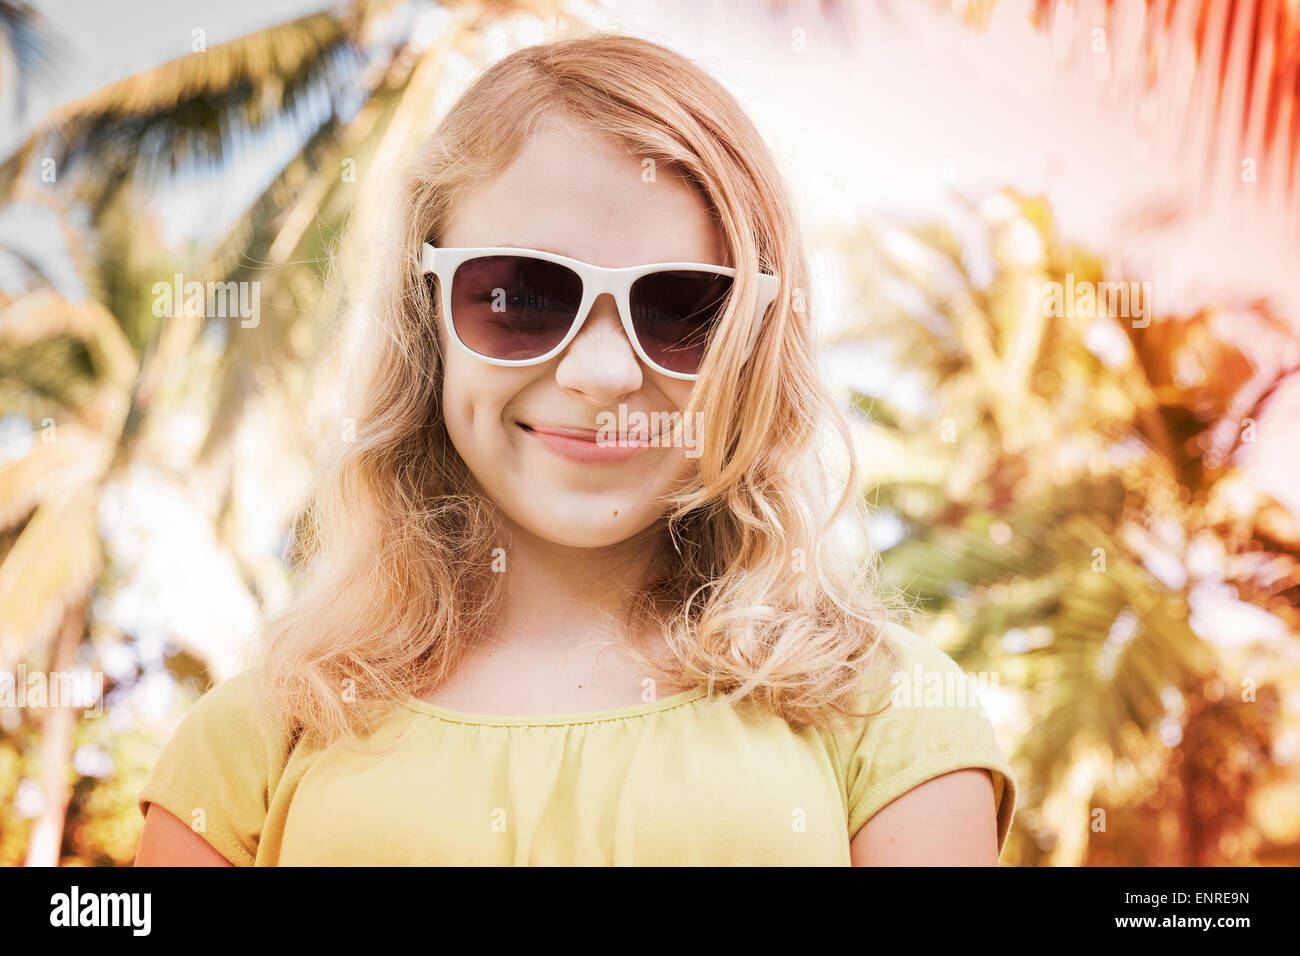 Blonde lächelnde Teenager-Mädchen in Sonnenbrillen, getönten Nahaufnahme outdoor Sommer Portrait mit Palmen auf einem bunten Hintergrund Foto mit Stockfoto